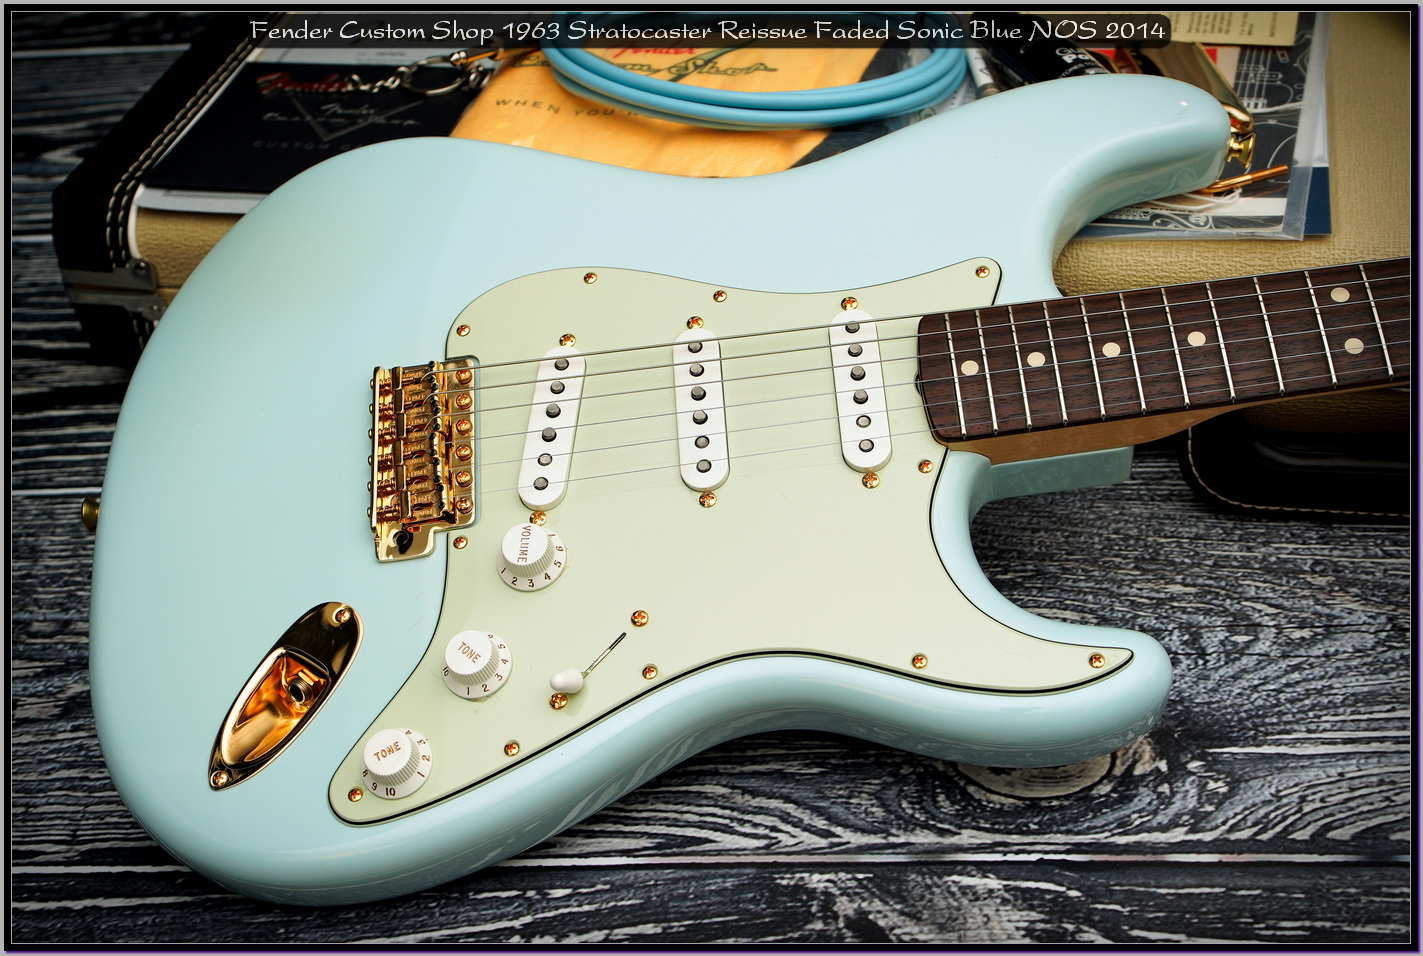 Fender Custom Shop 1963 Stratocaster Reissue Faded Sonic Blue NOS 2014 05_x1400.jpg